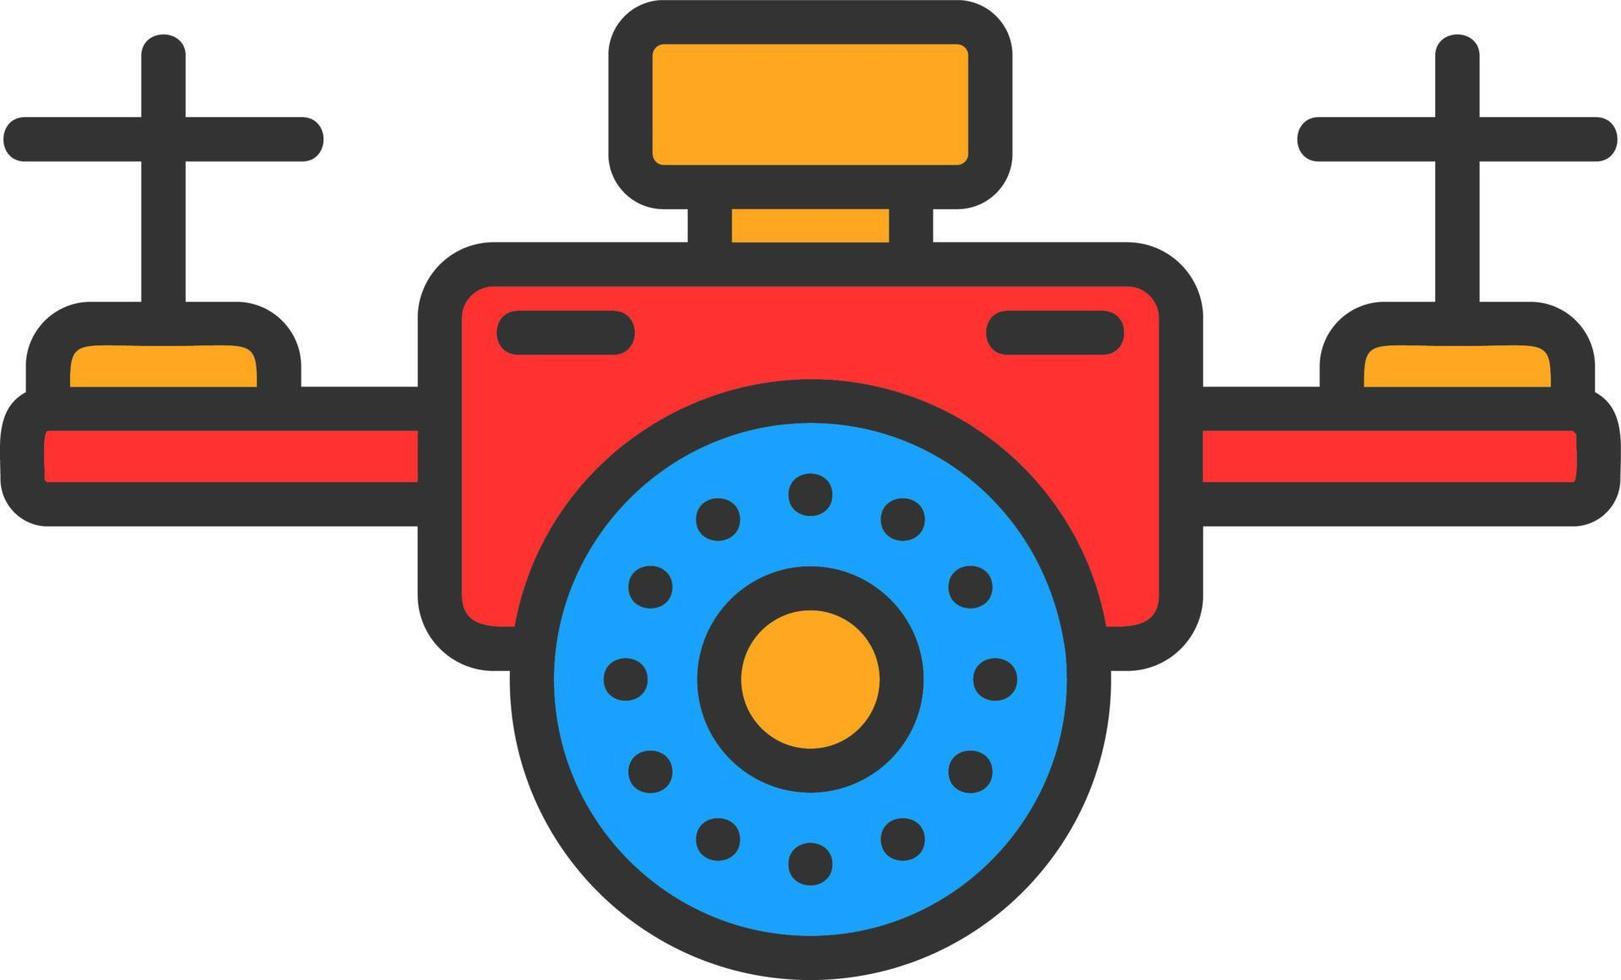 design de ícone de vetor de câmera drone